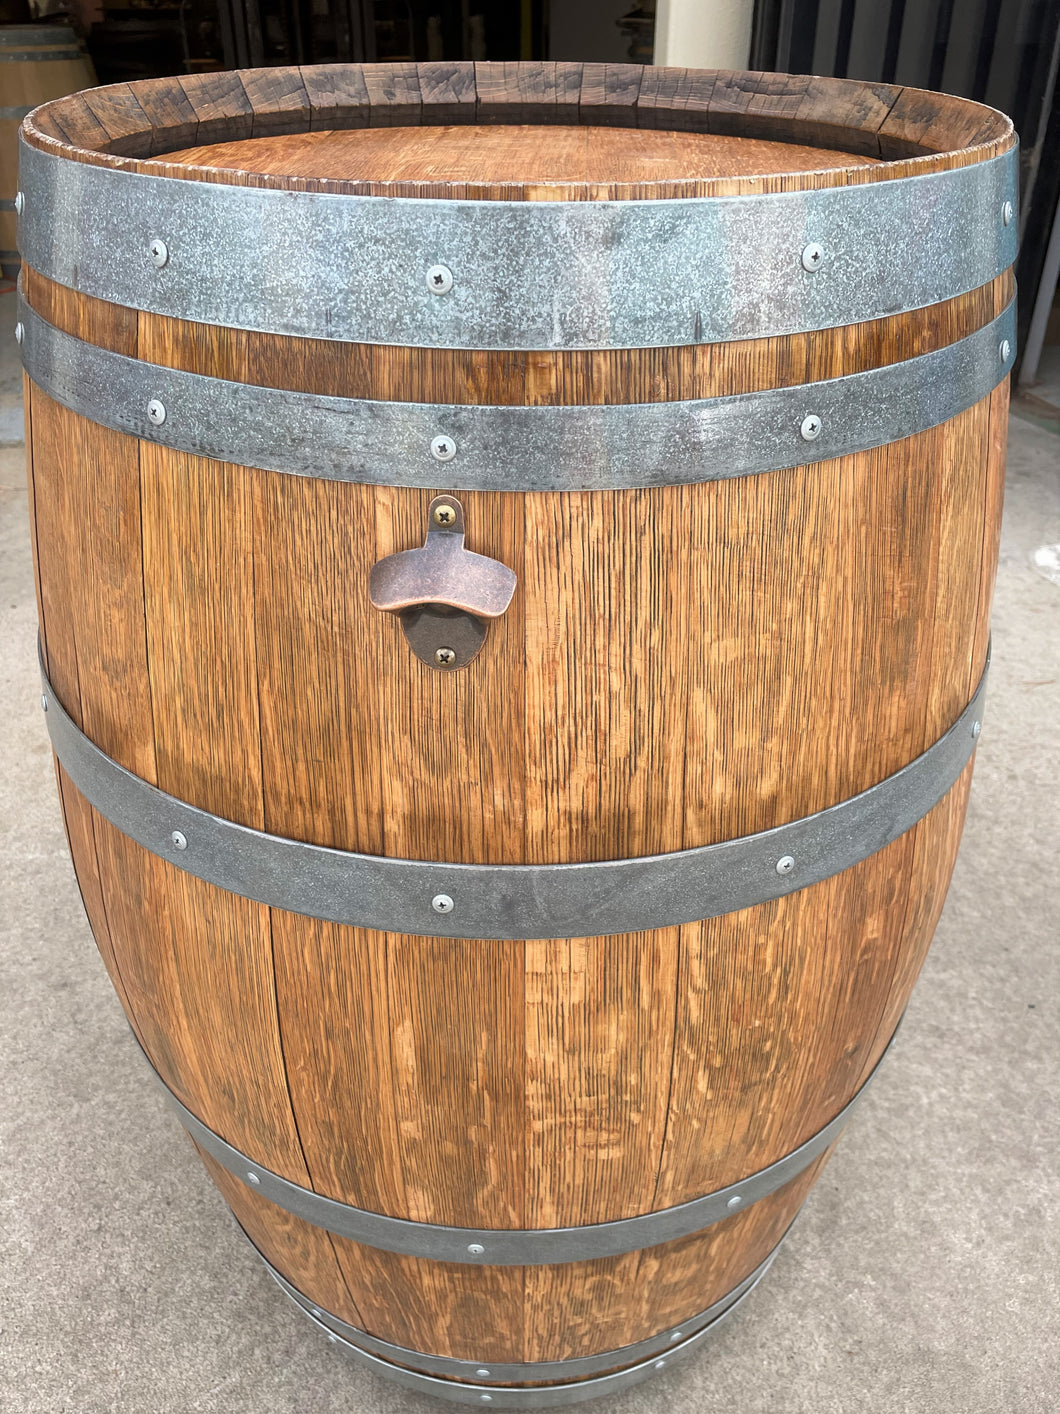 Original Barrel- varnished w/ lockable castors